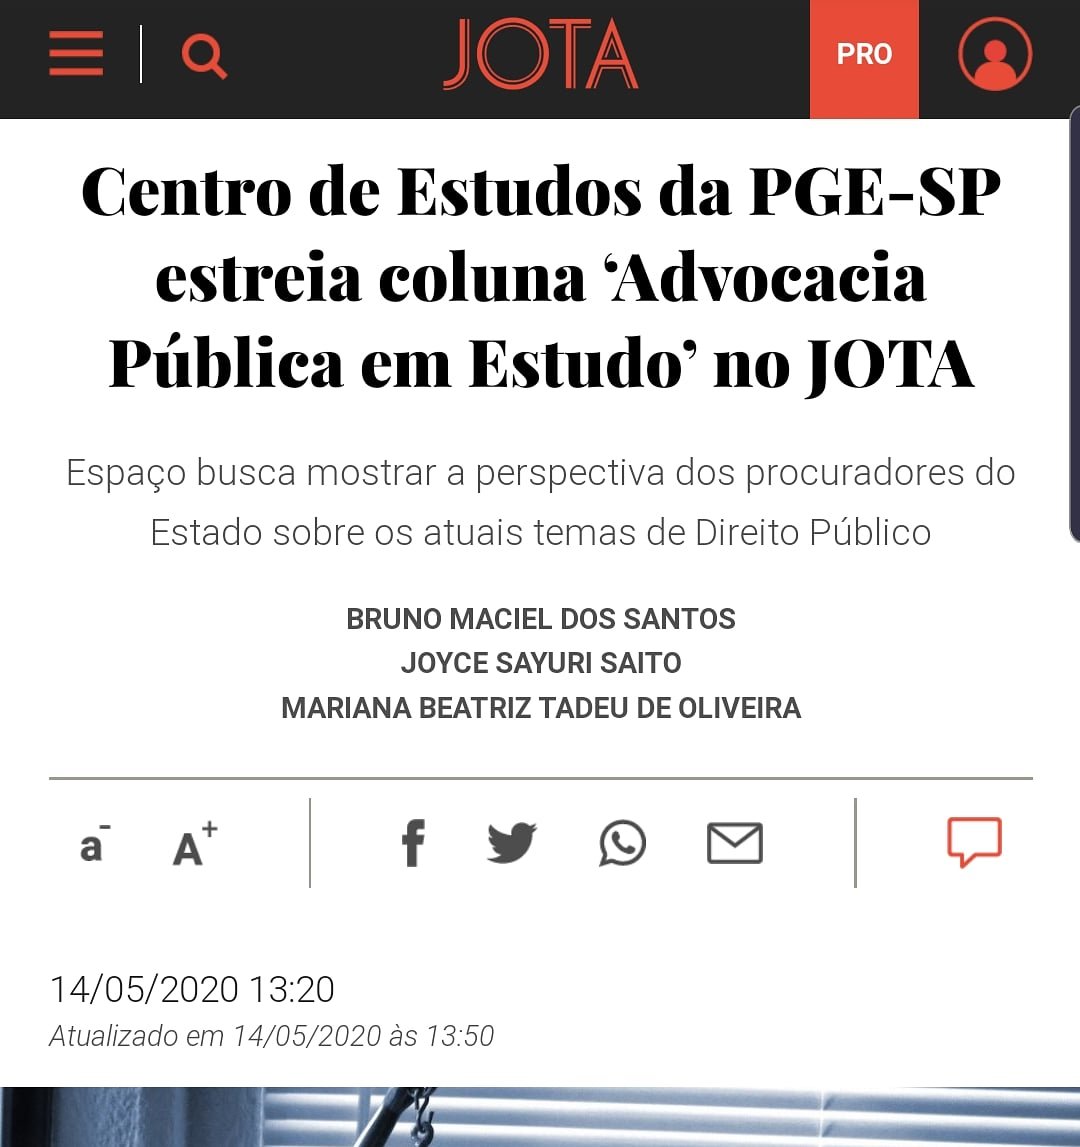 Centro de Estudos da PGE-SP estreia coluna  “Advocacia Publica em Estudo” no JOTA